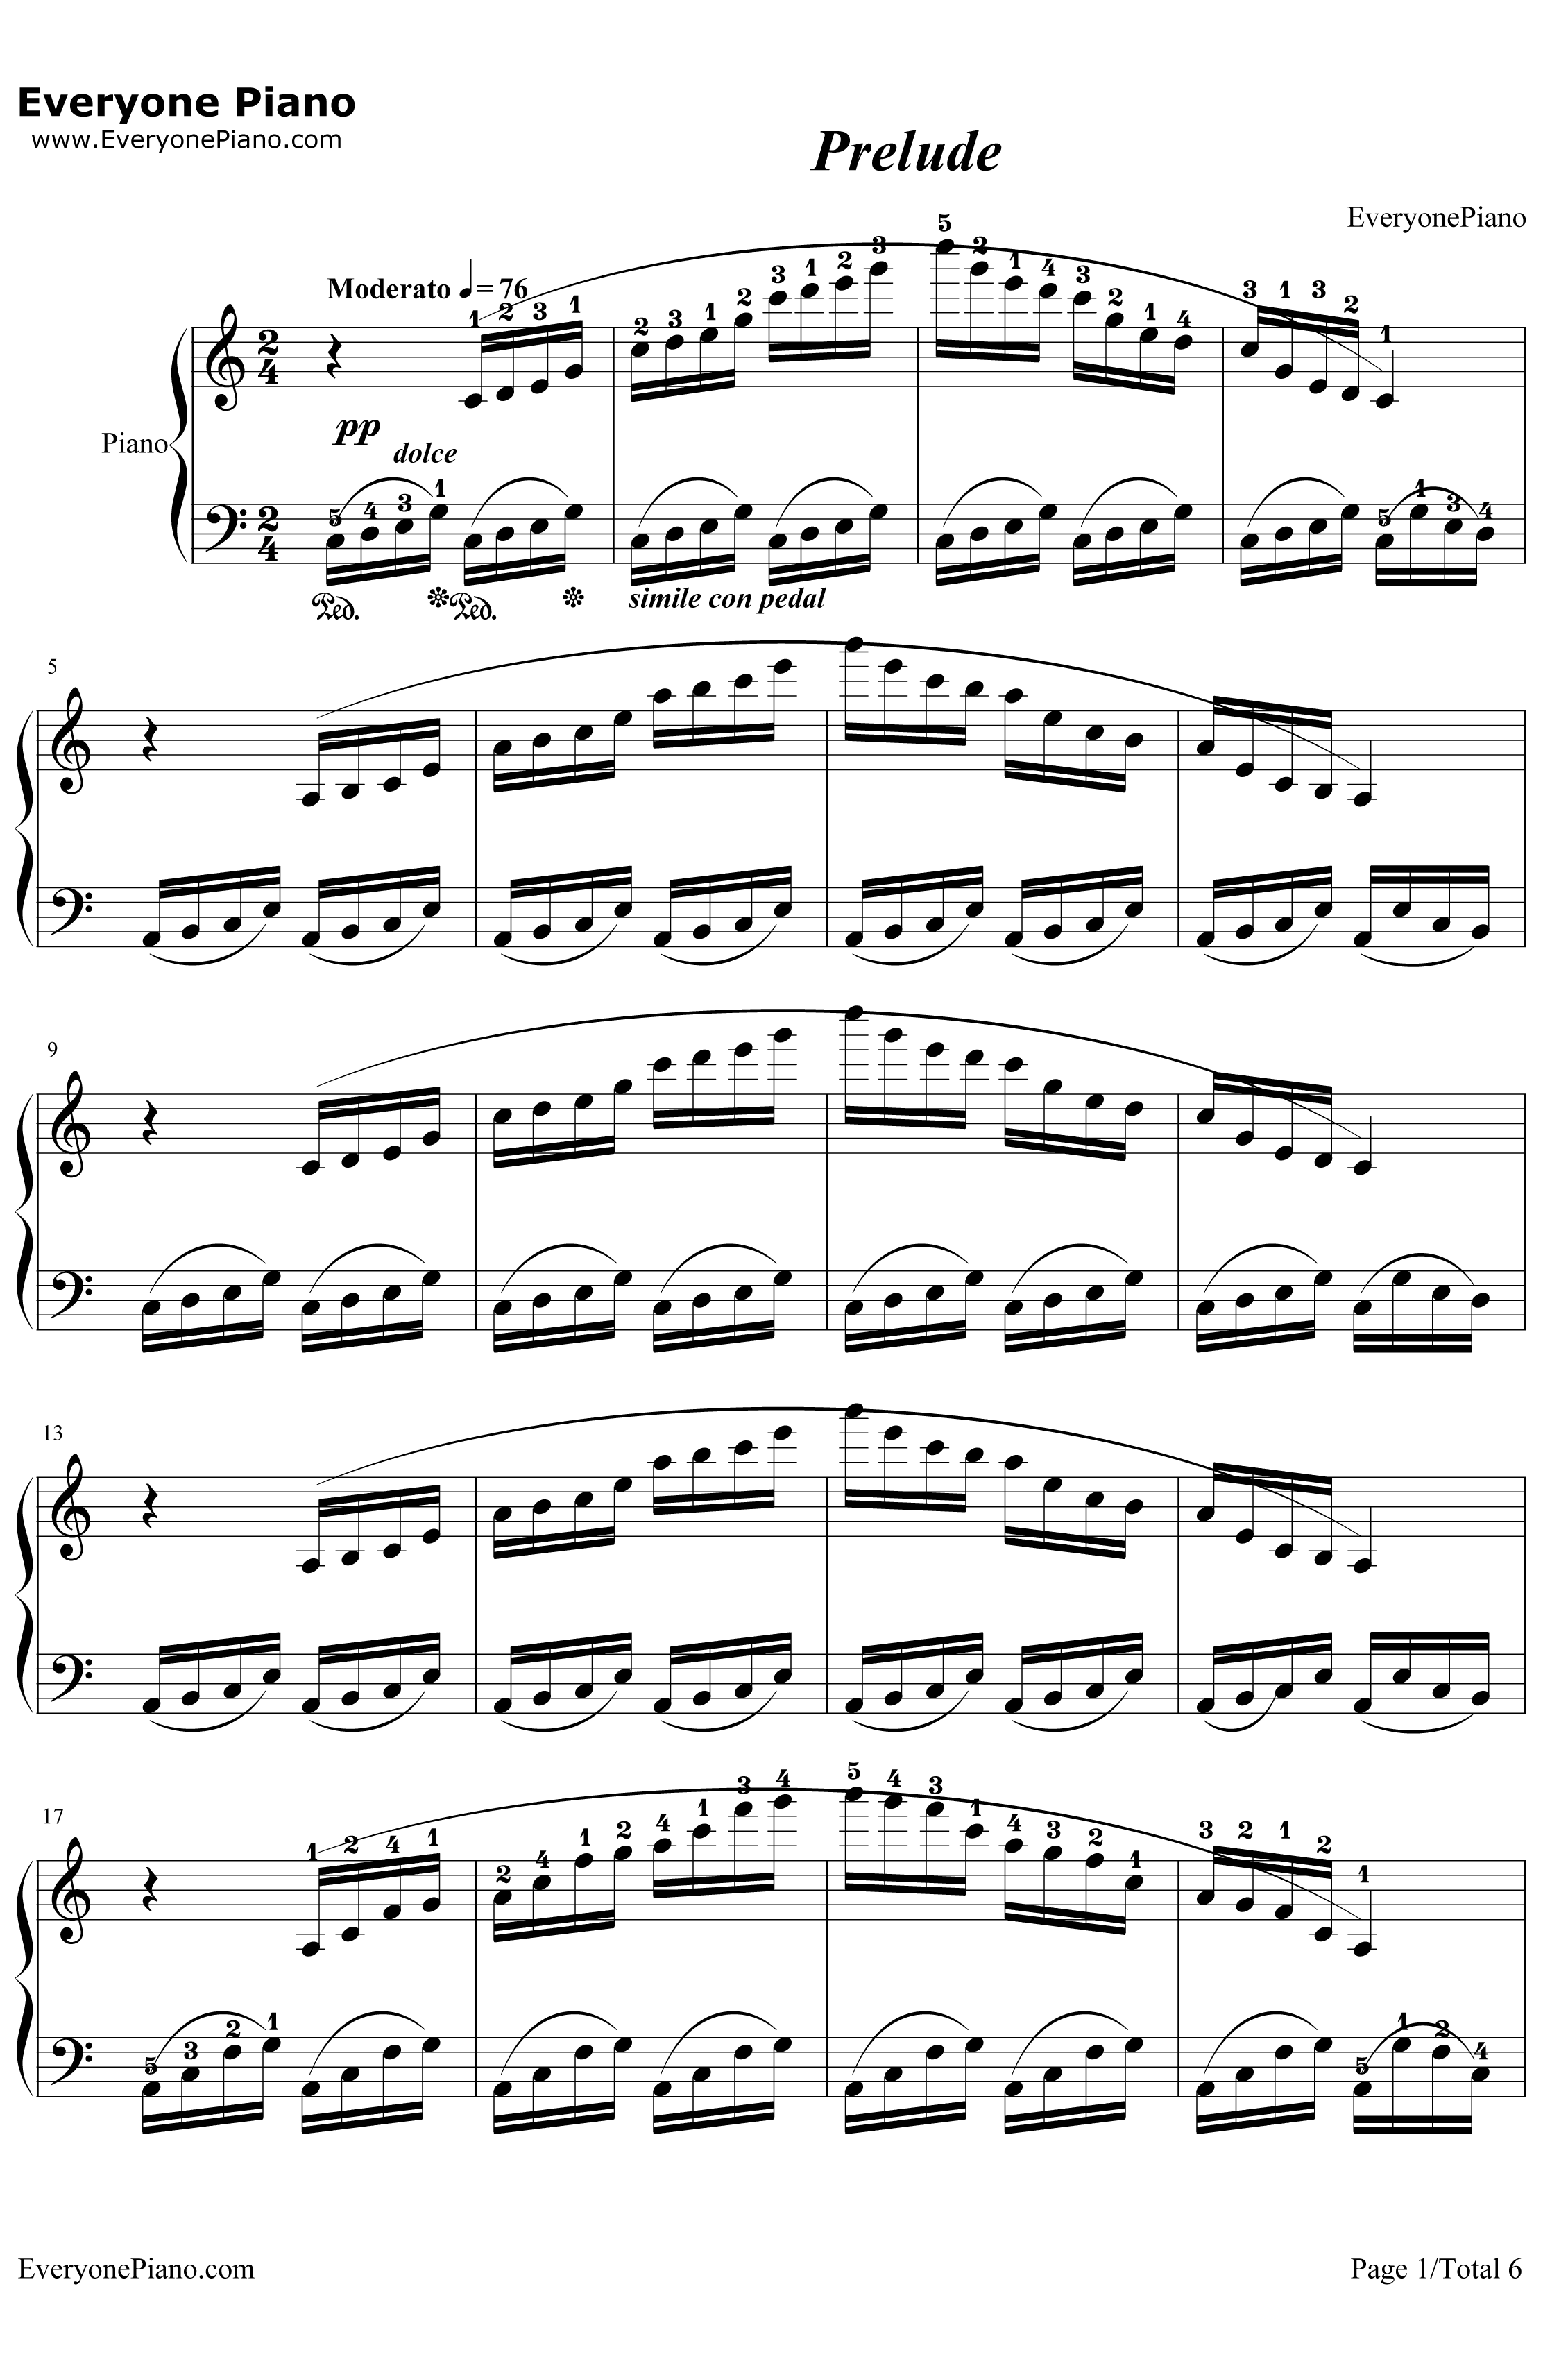 Prelude钢琴谱-植松伸夫1